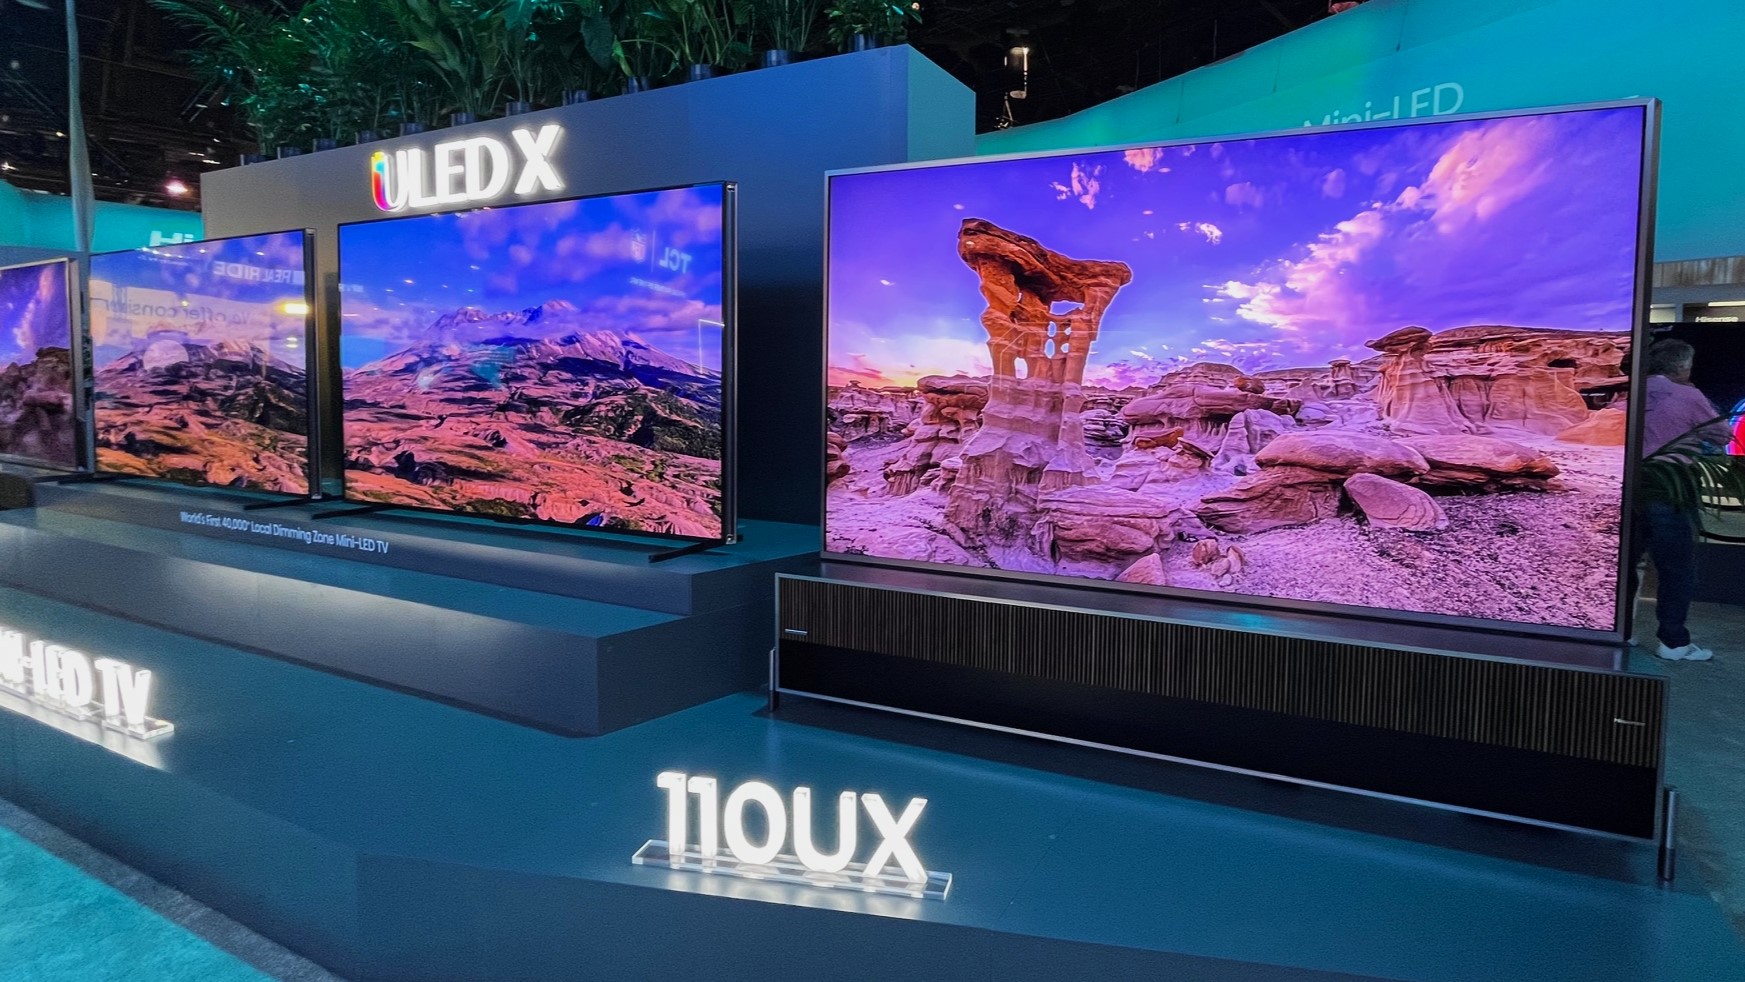 Televisores Hisense ULED-X en exhibición en CES